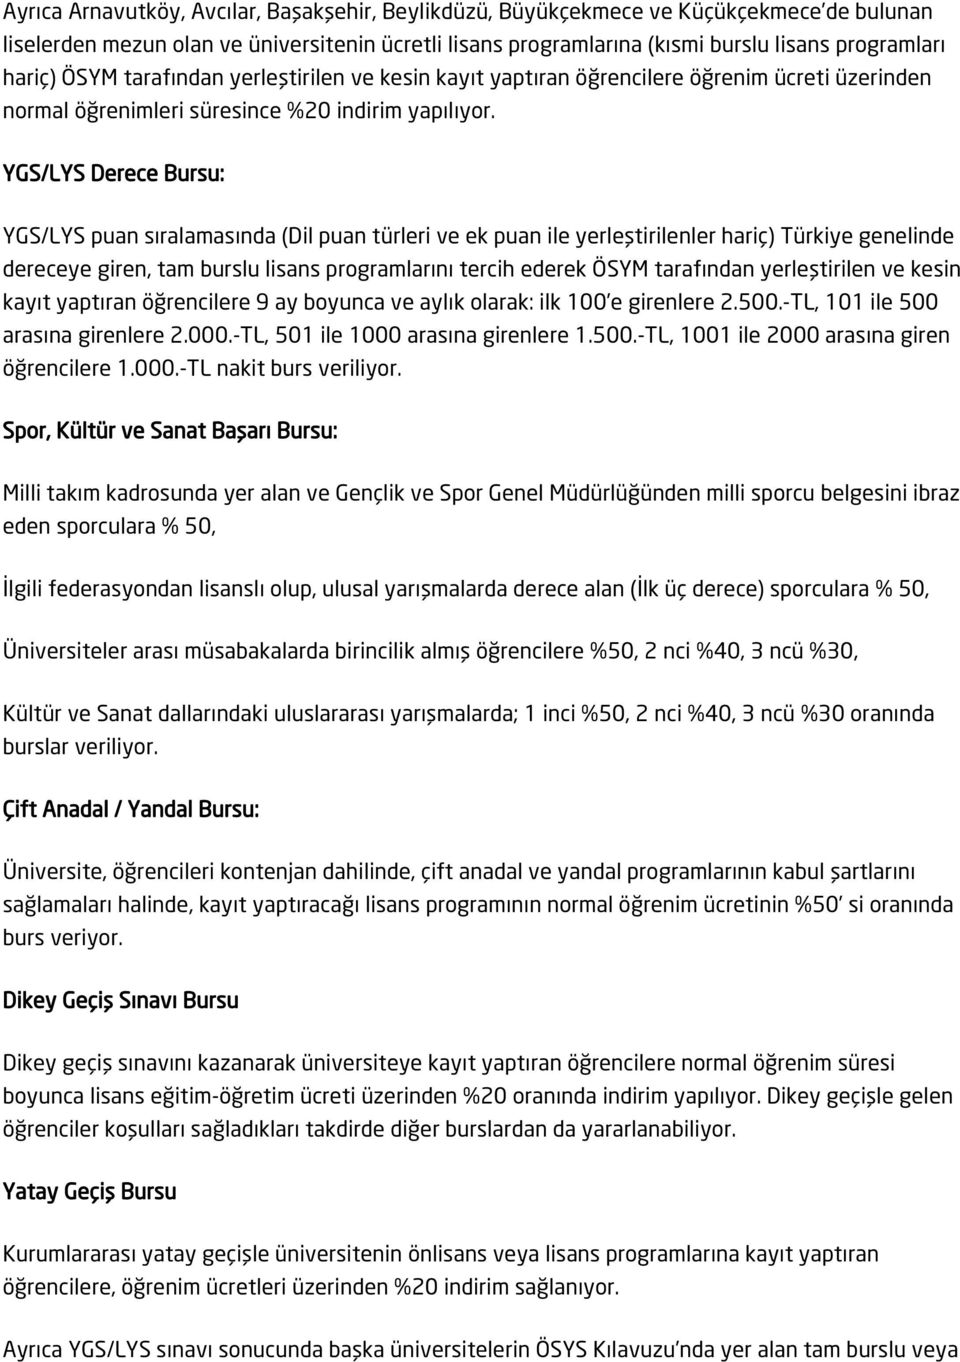 YGS/LYS Derece Bursu: YGS/LYS puan sıralamasında (Dil puan türleri ve ek puan ile yerleştirilenler hariç) Türkiye genelinde dereceye giren, tam burslu lisans programlarını tercih ederek ÖSYM